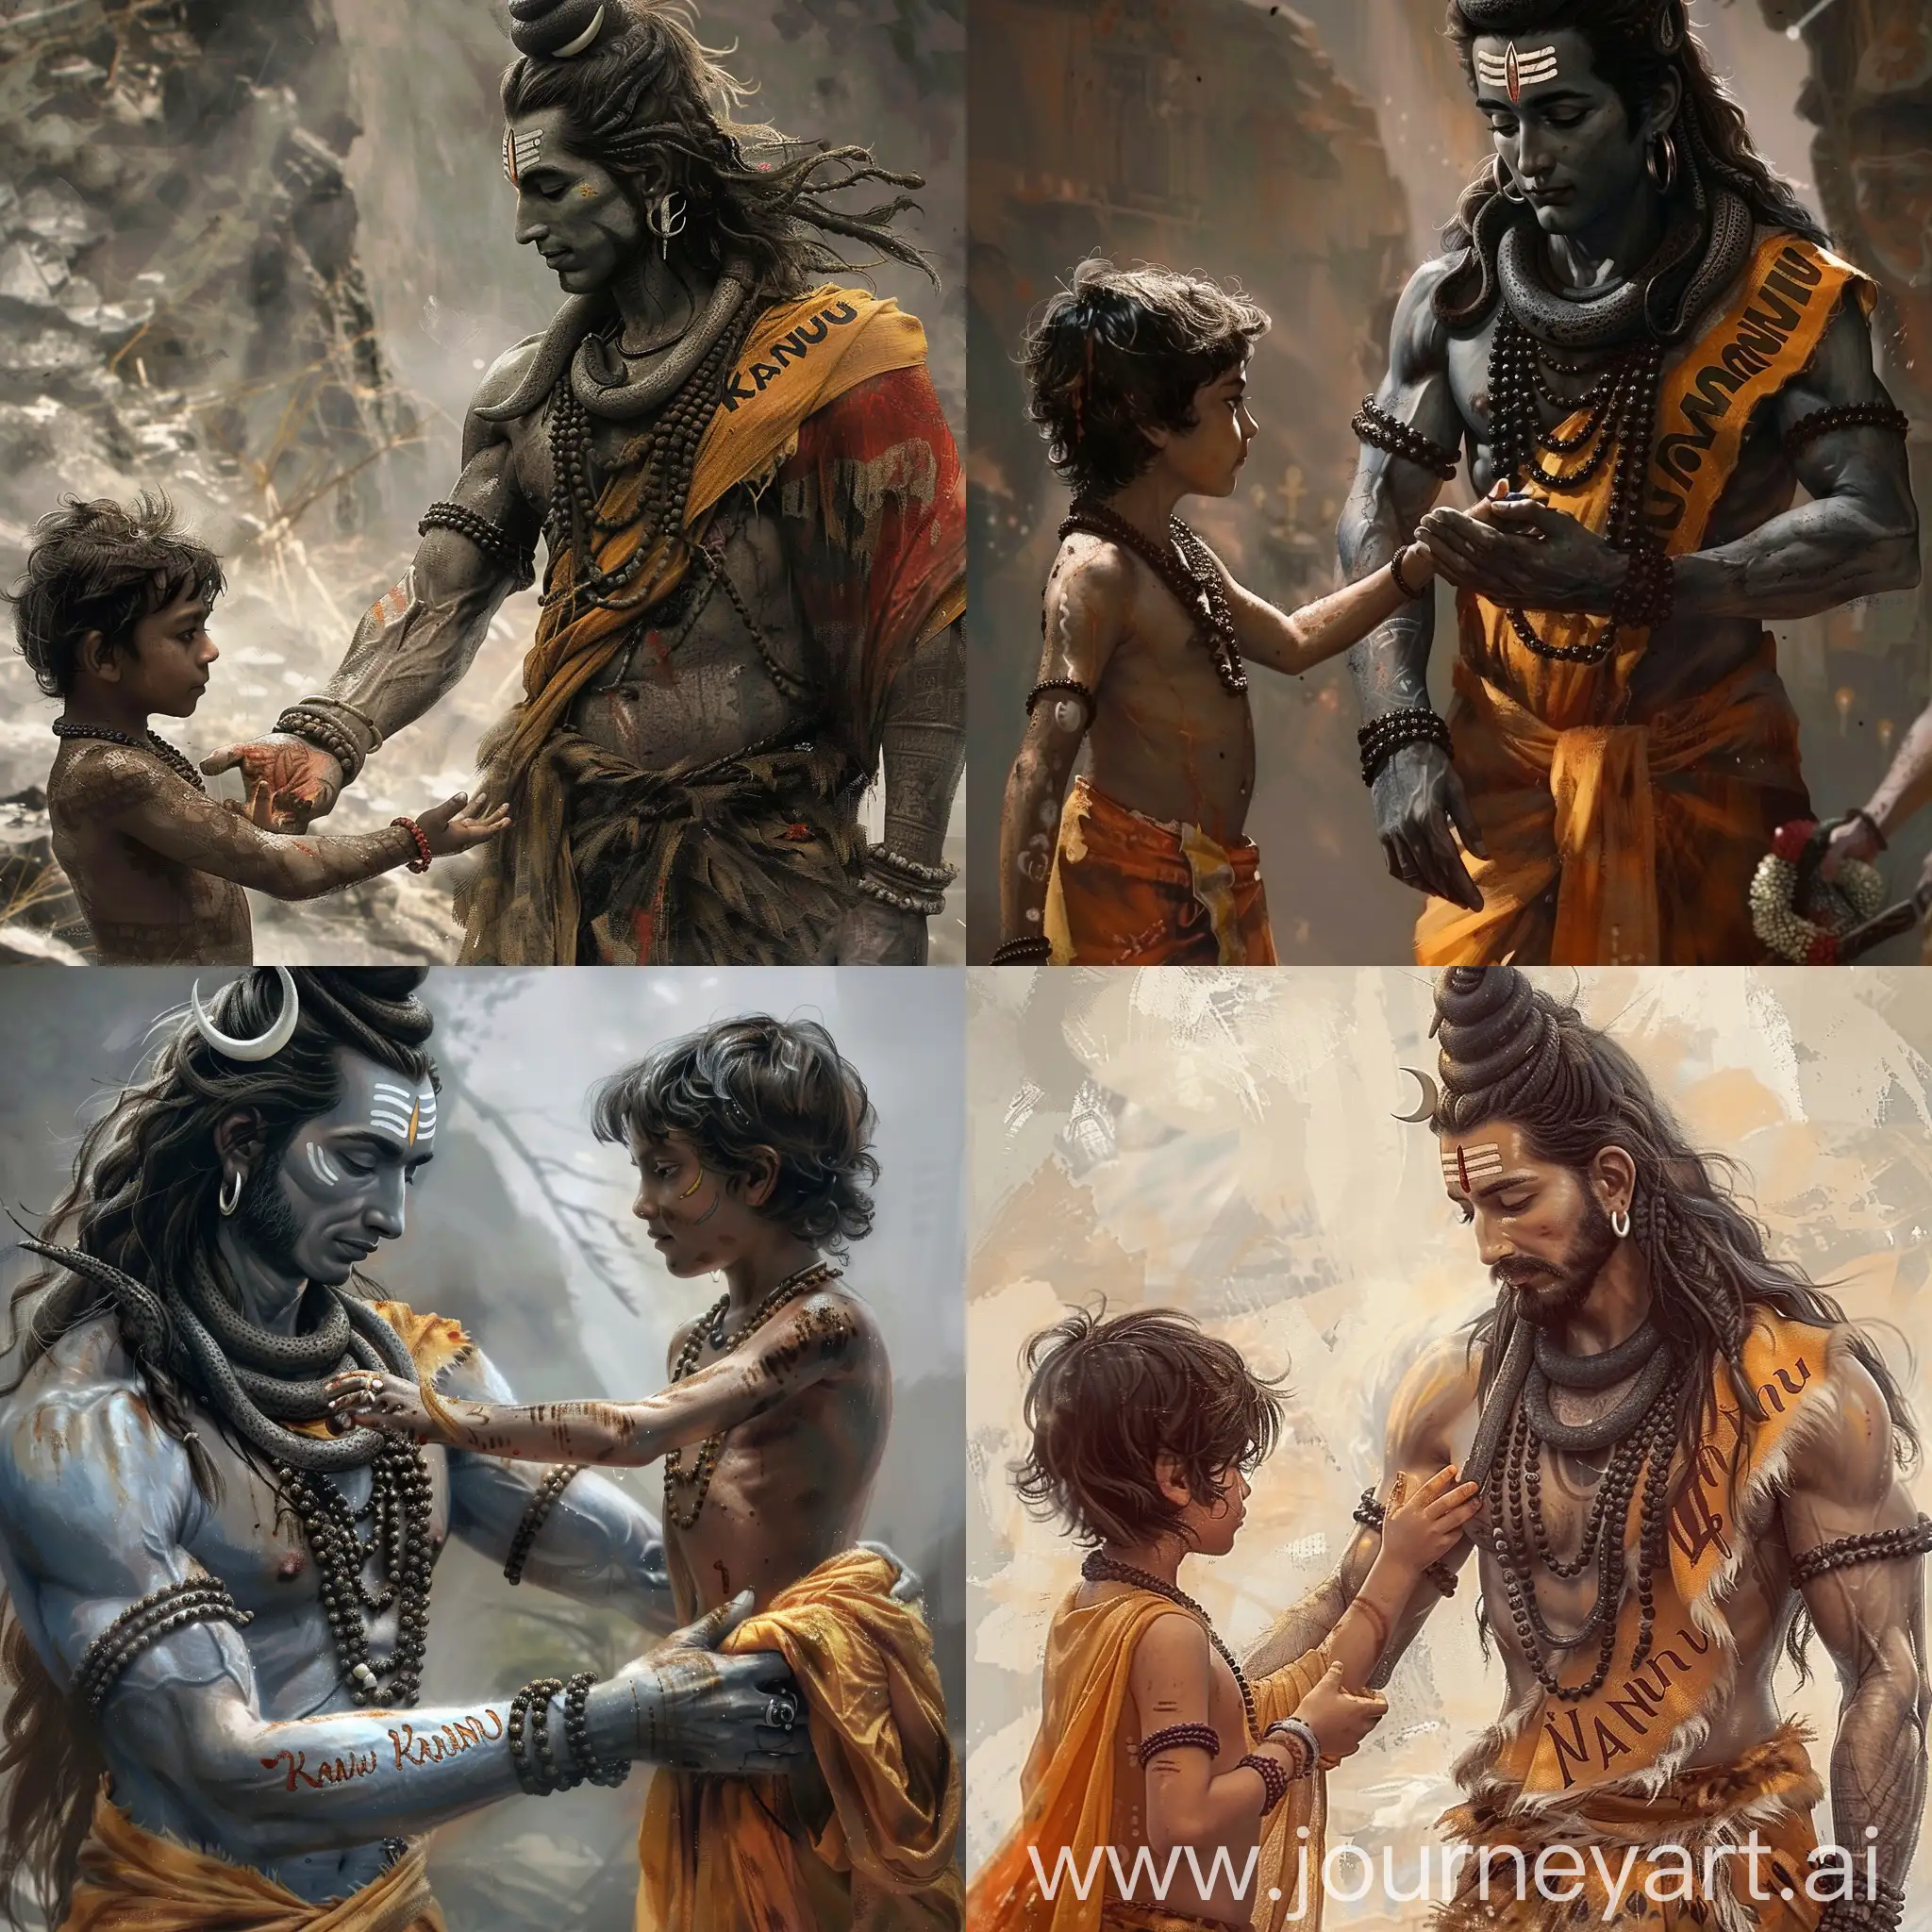 Lord-Shiva-guiding-a-boy-in-saffron-attire-with-Kannu-inscription